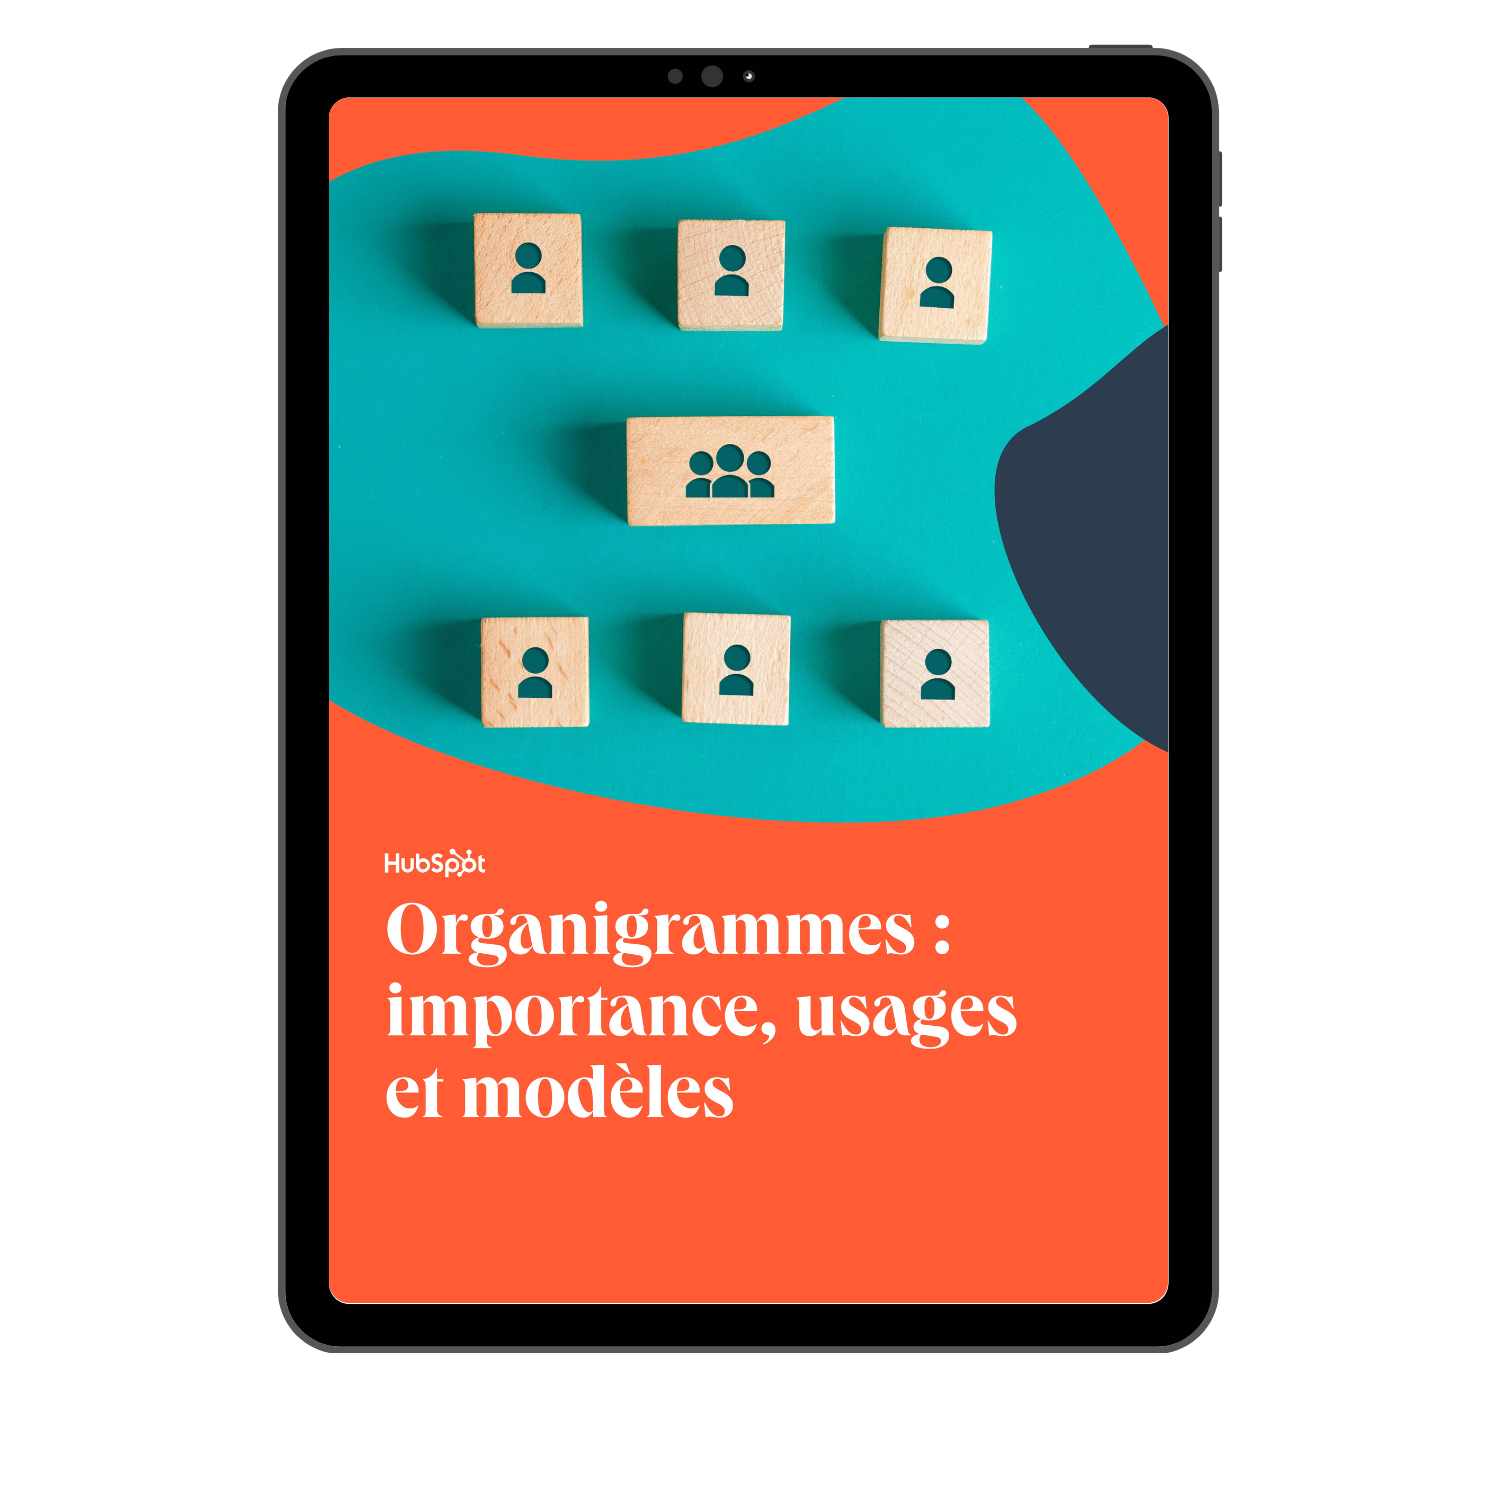 Organigrammes : importance, usages et modèles